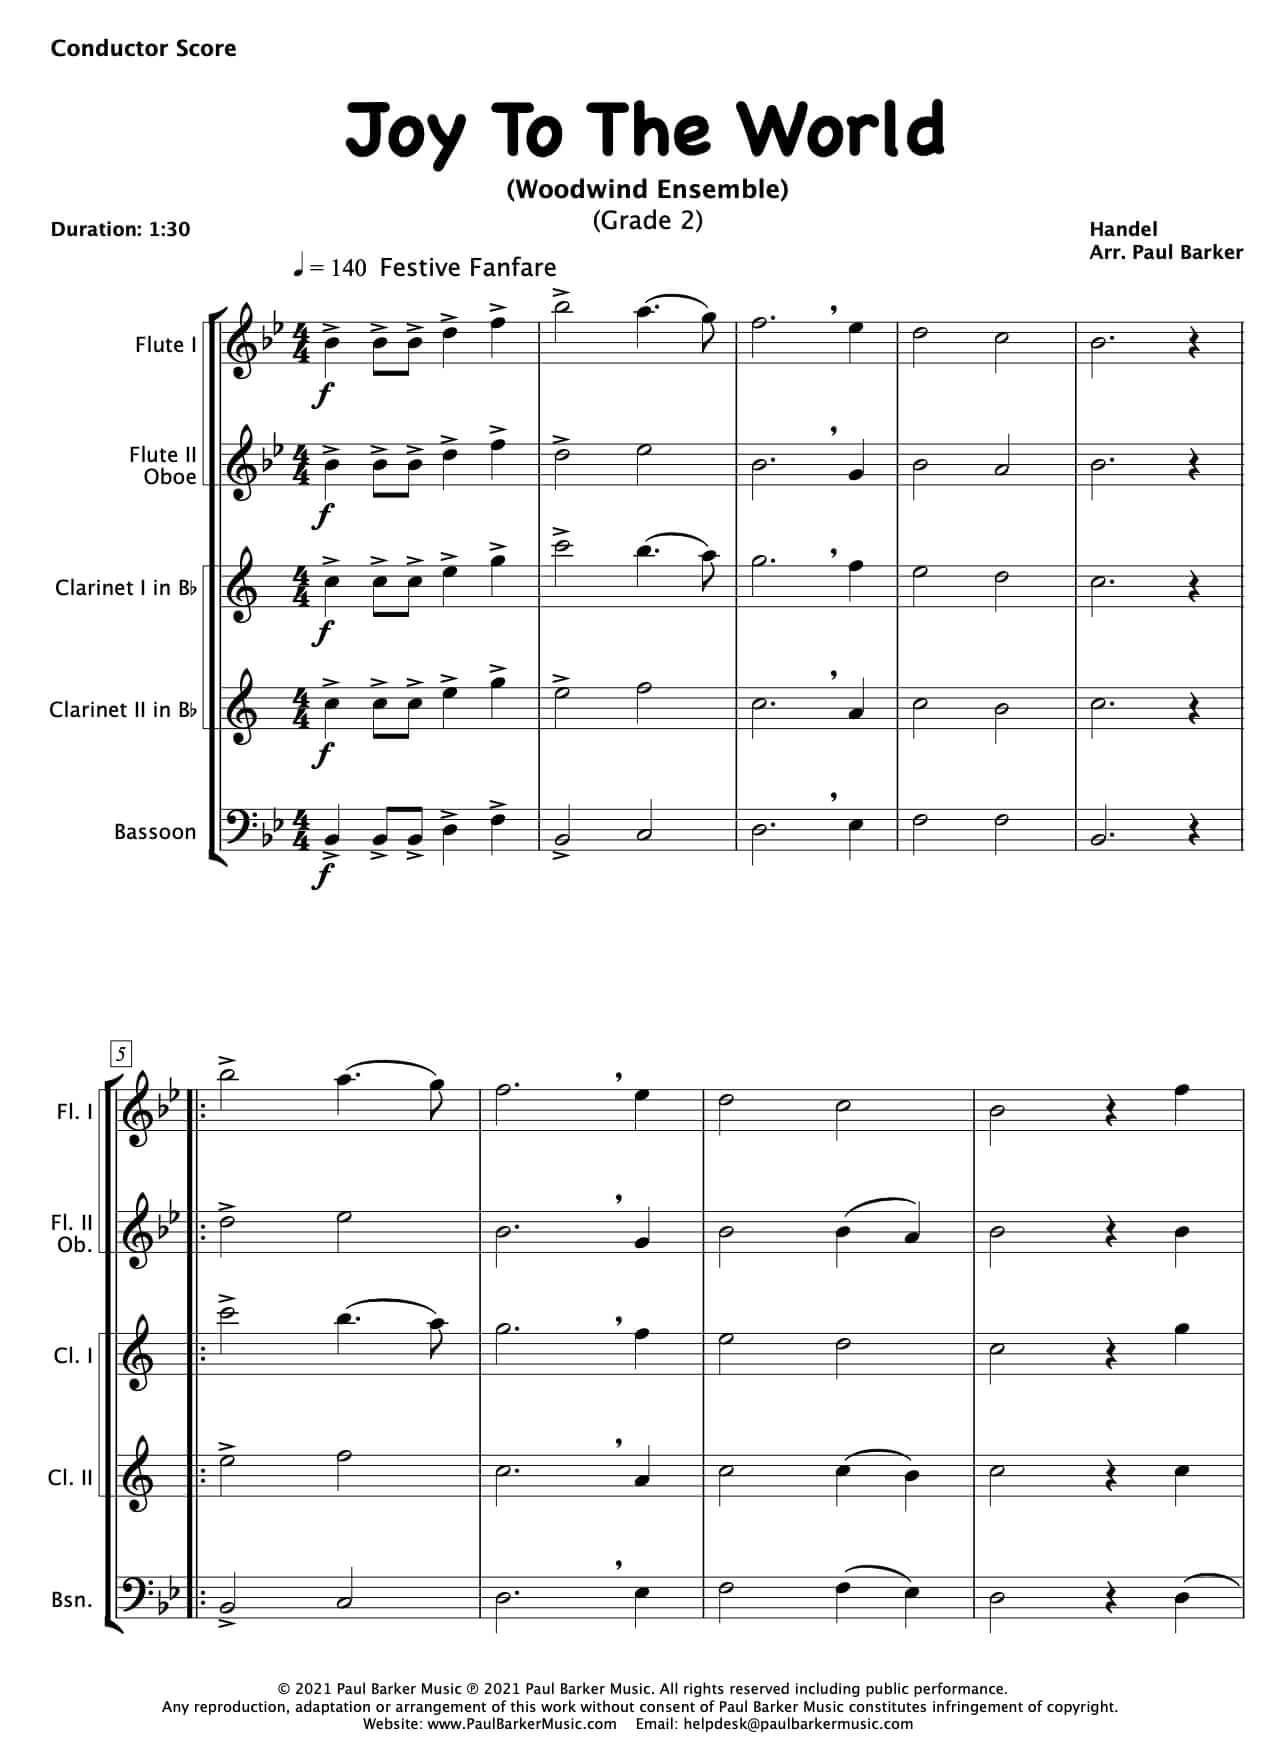 Christmas Woodwind Ensembles - Book 1 - Paul Barker Music 